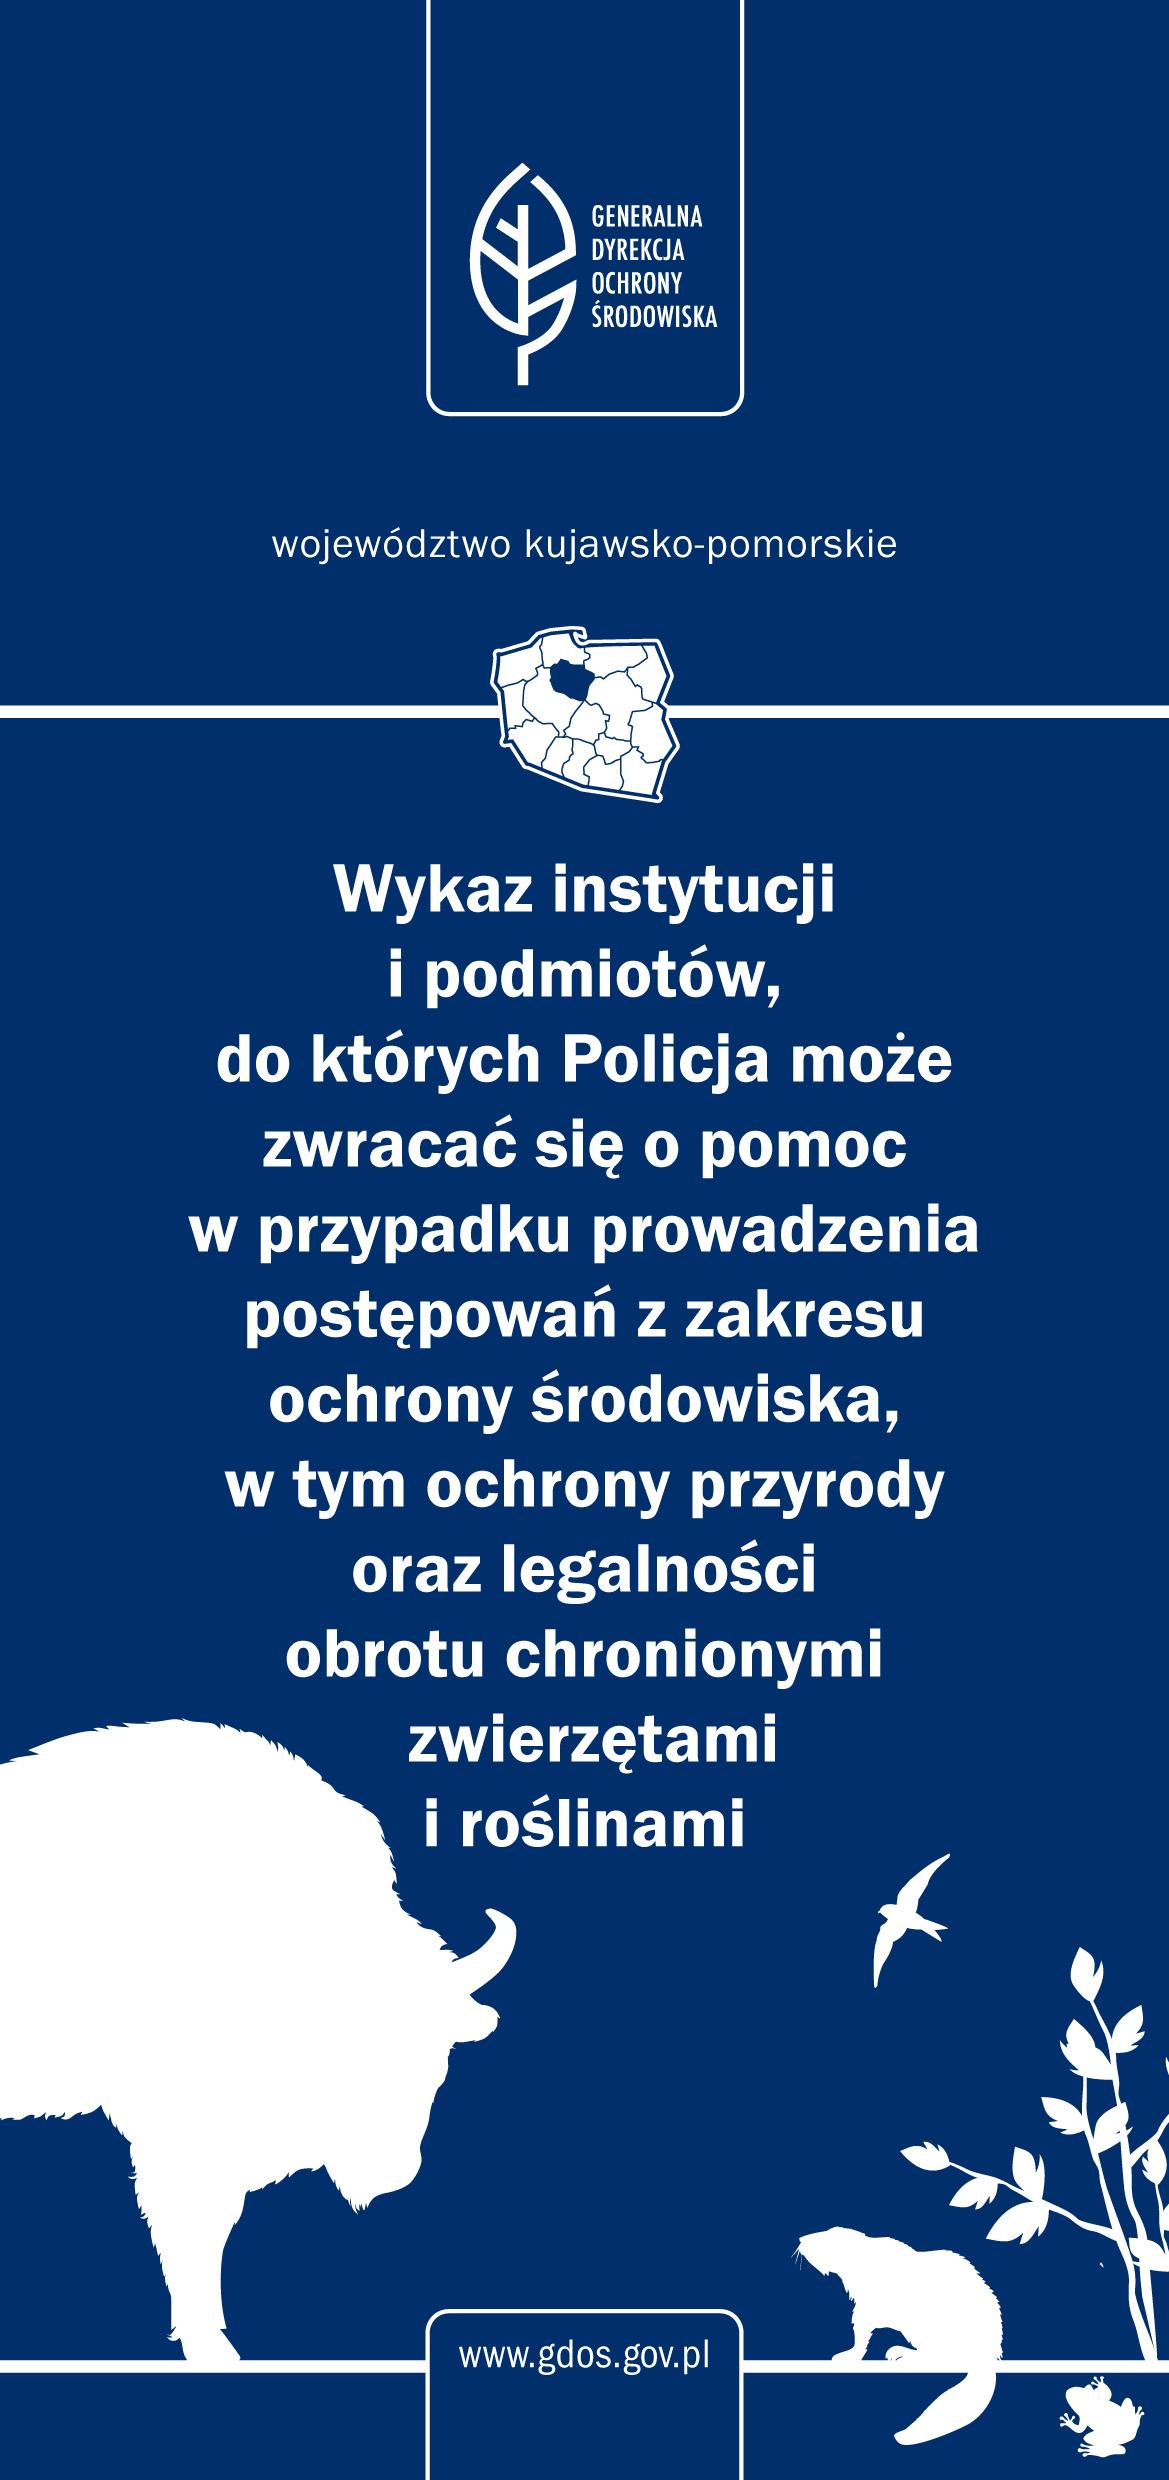 Województwo kujawsko-pomorskie